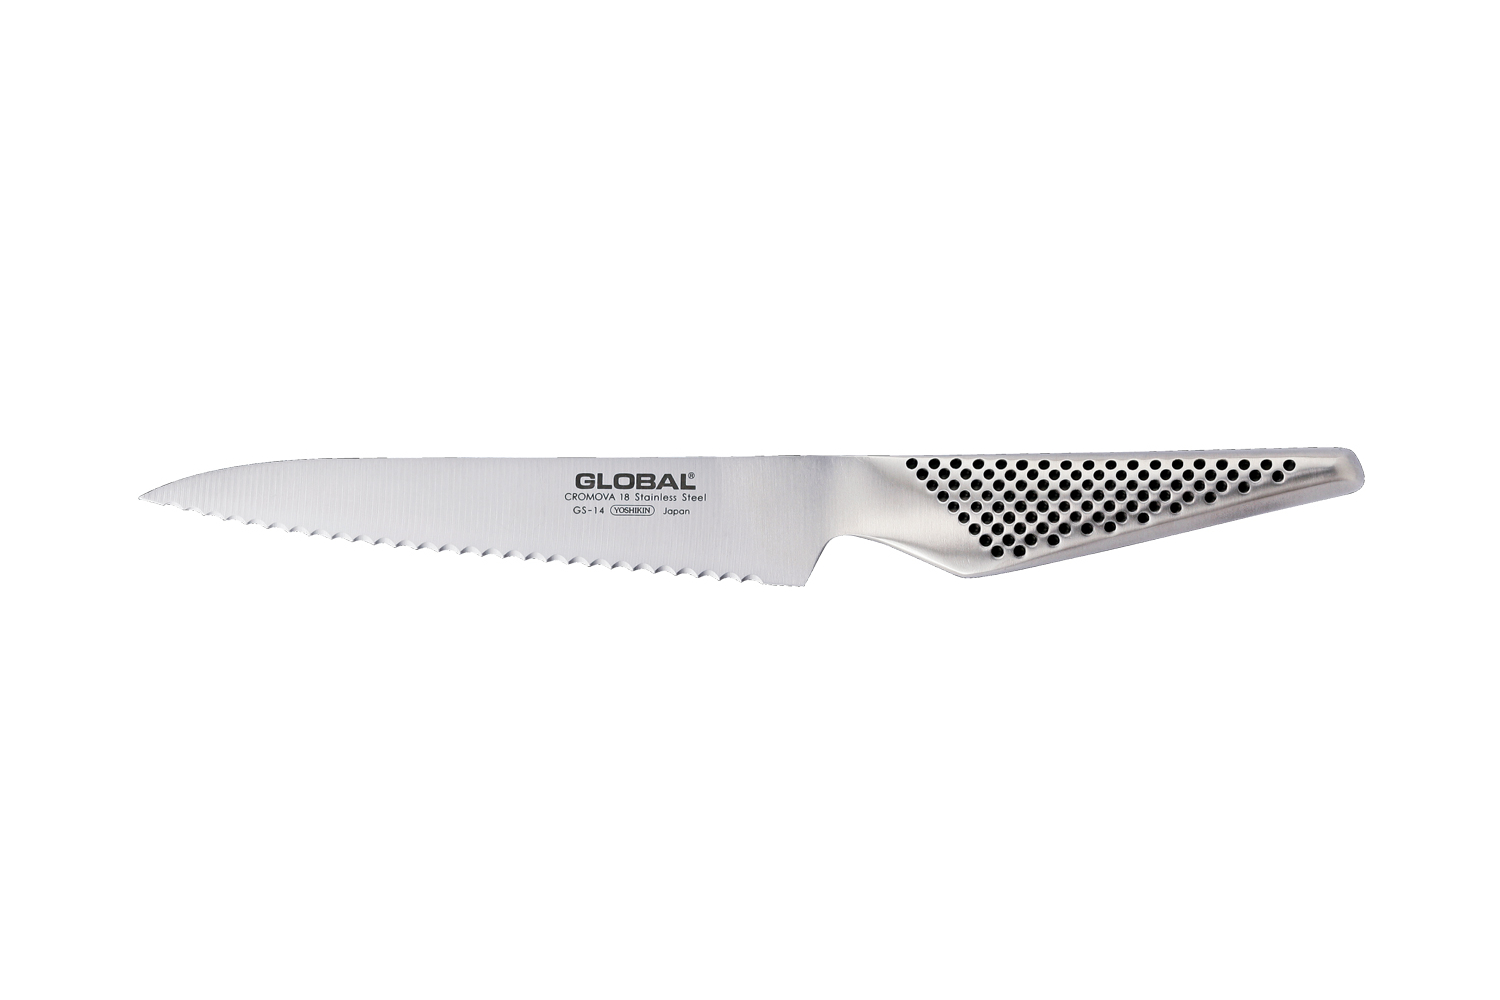 Global Classic 6” Serrated Utility Knife